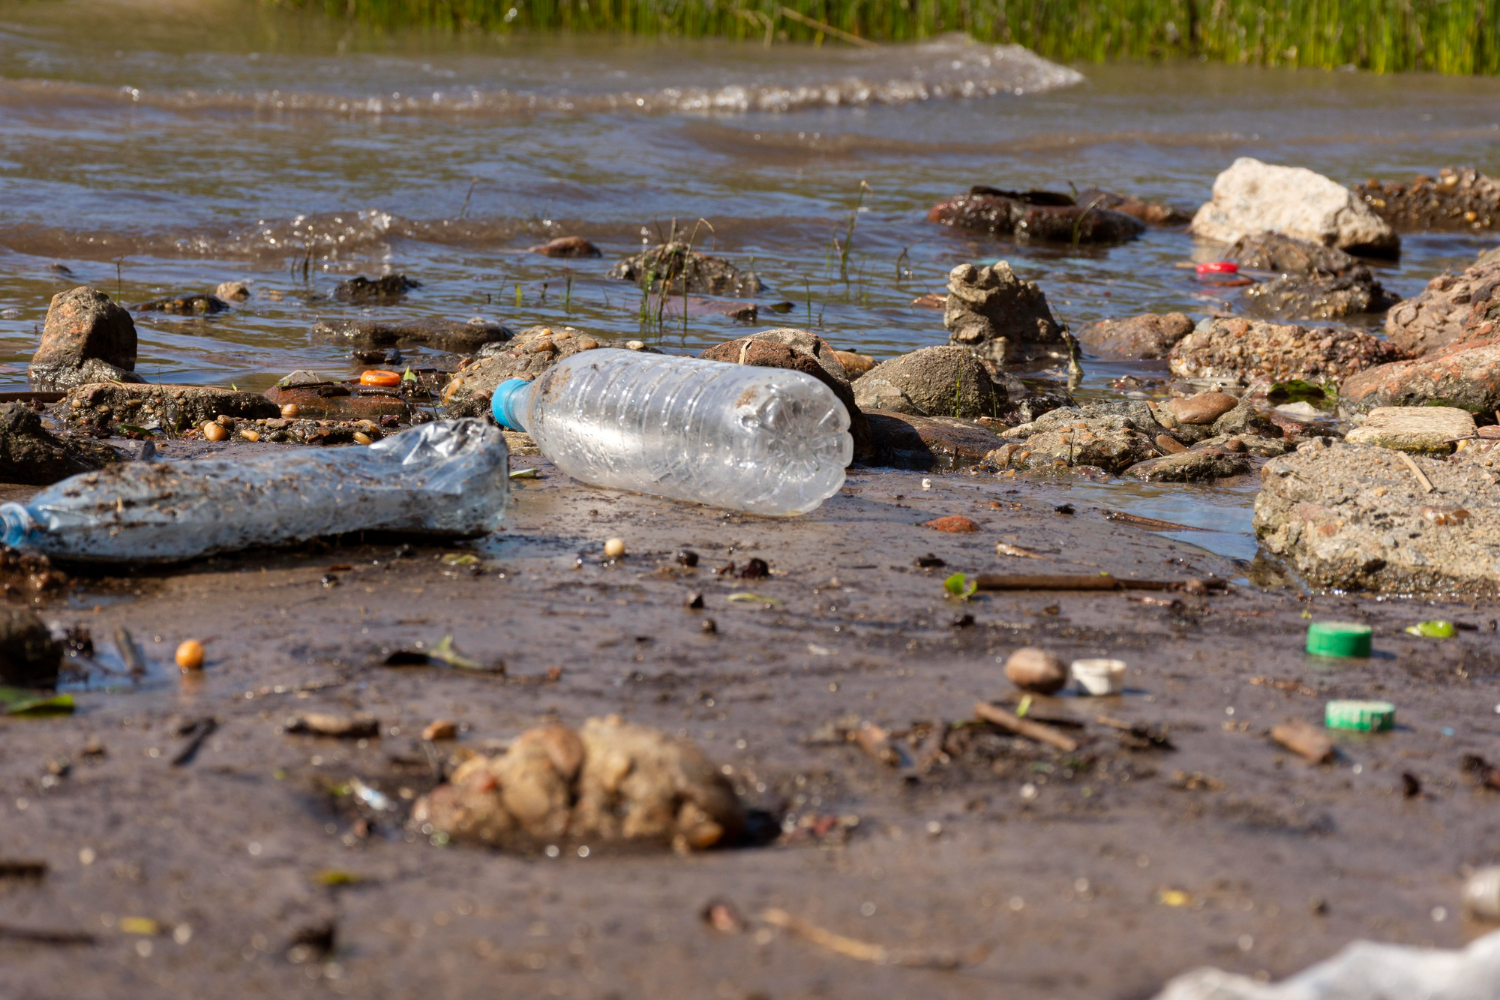 Mniej niż 2 proc. polskich rzek ma czystą wodę zdatną do picia. Podczas akcji sprzątania wolontariusze zbierają setki ton śmieci